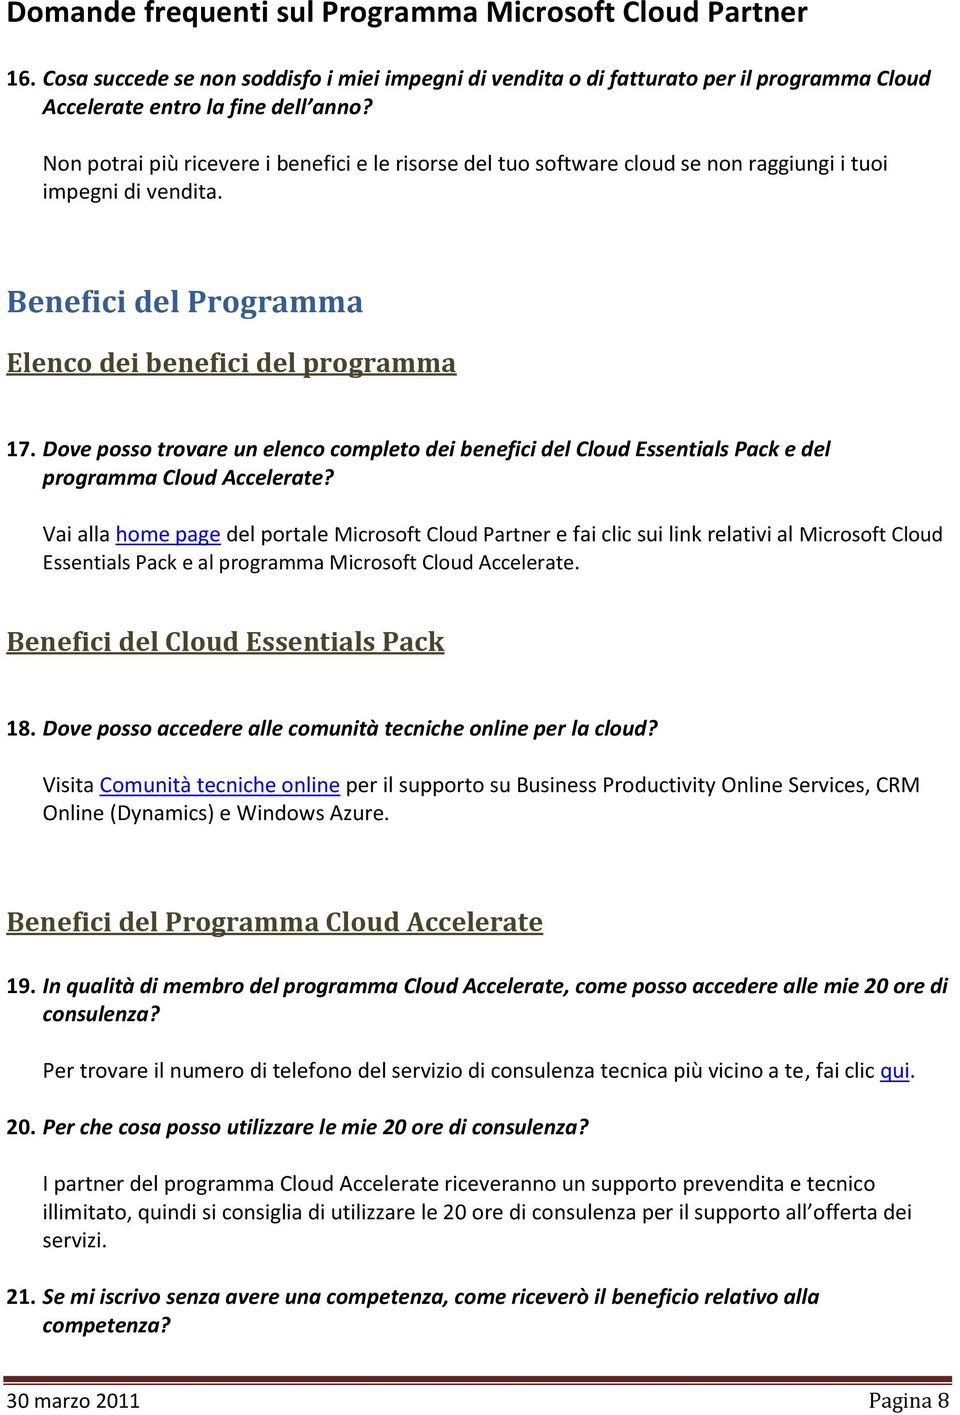 Dove posso trovare un elenco completo dei benefici del Cloud Essentials Pack e del programma Cloud Accelerate?